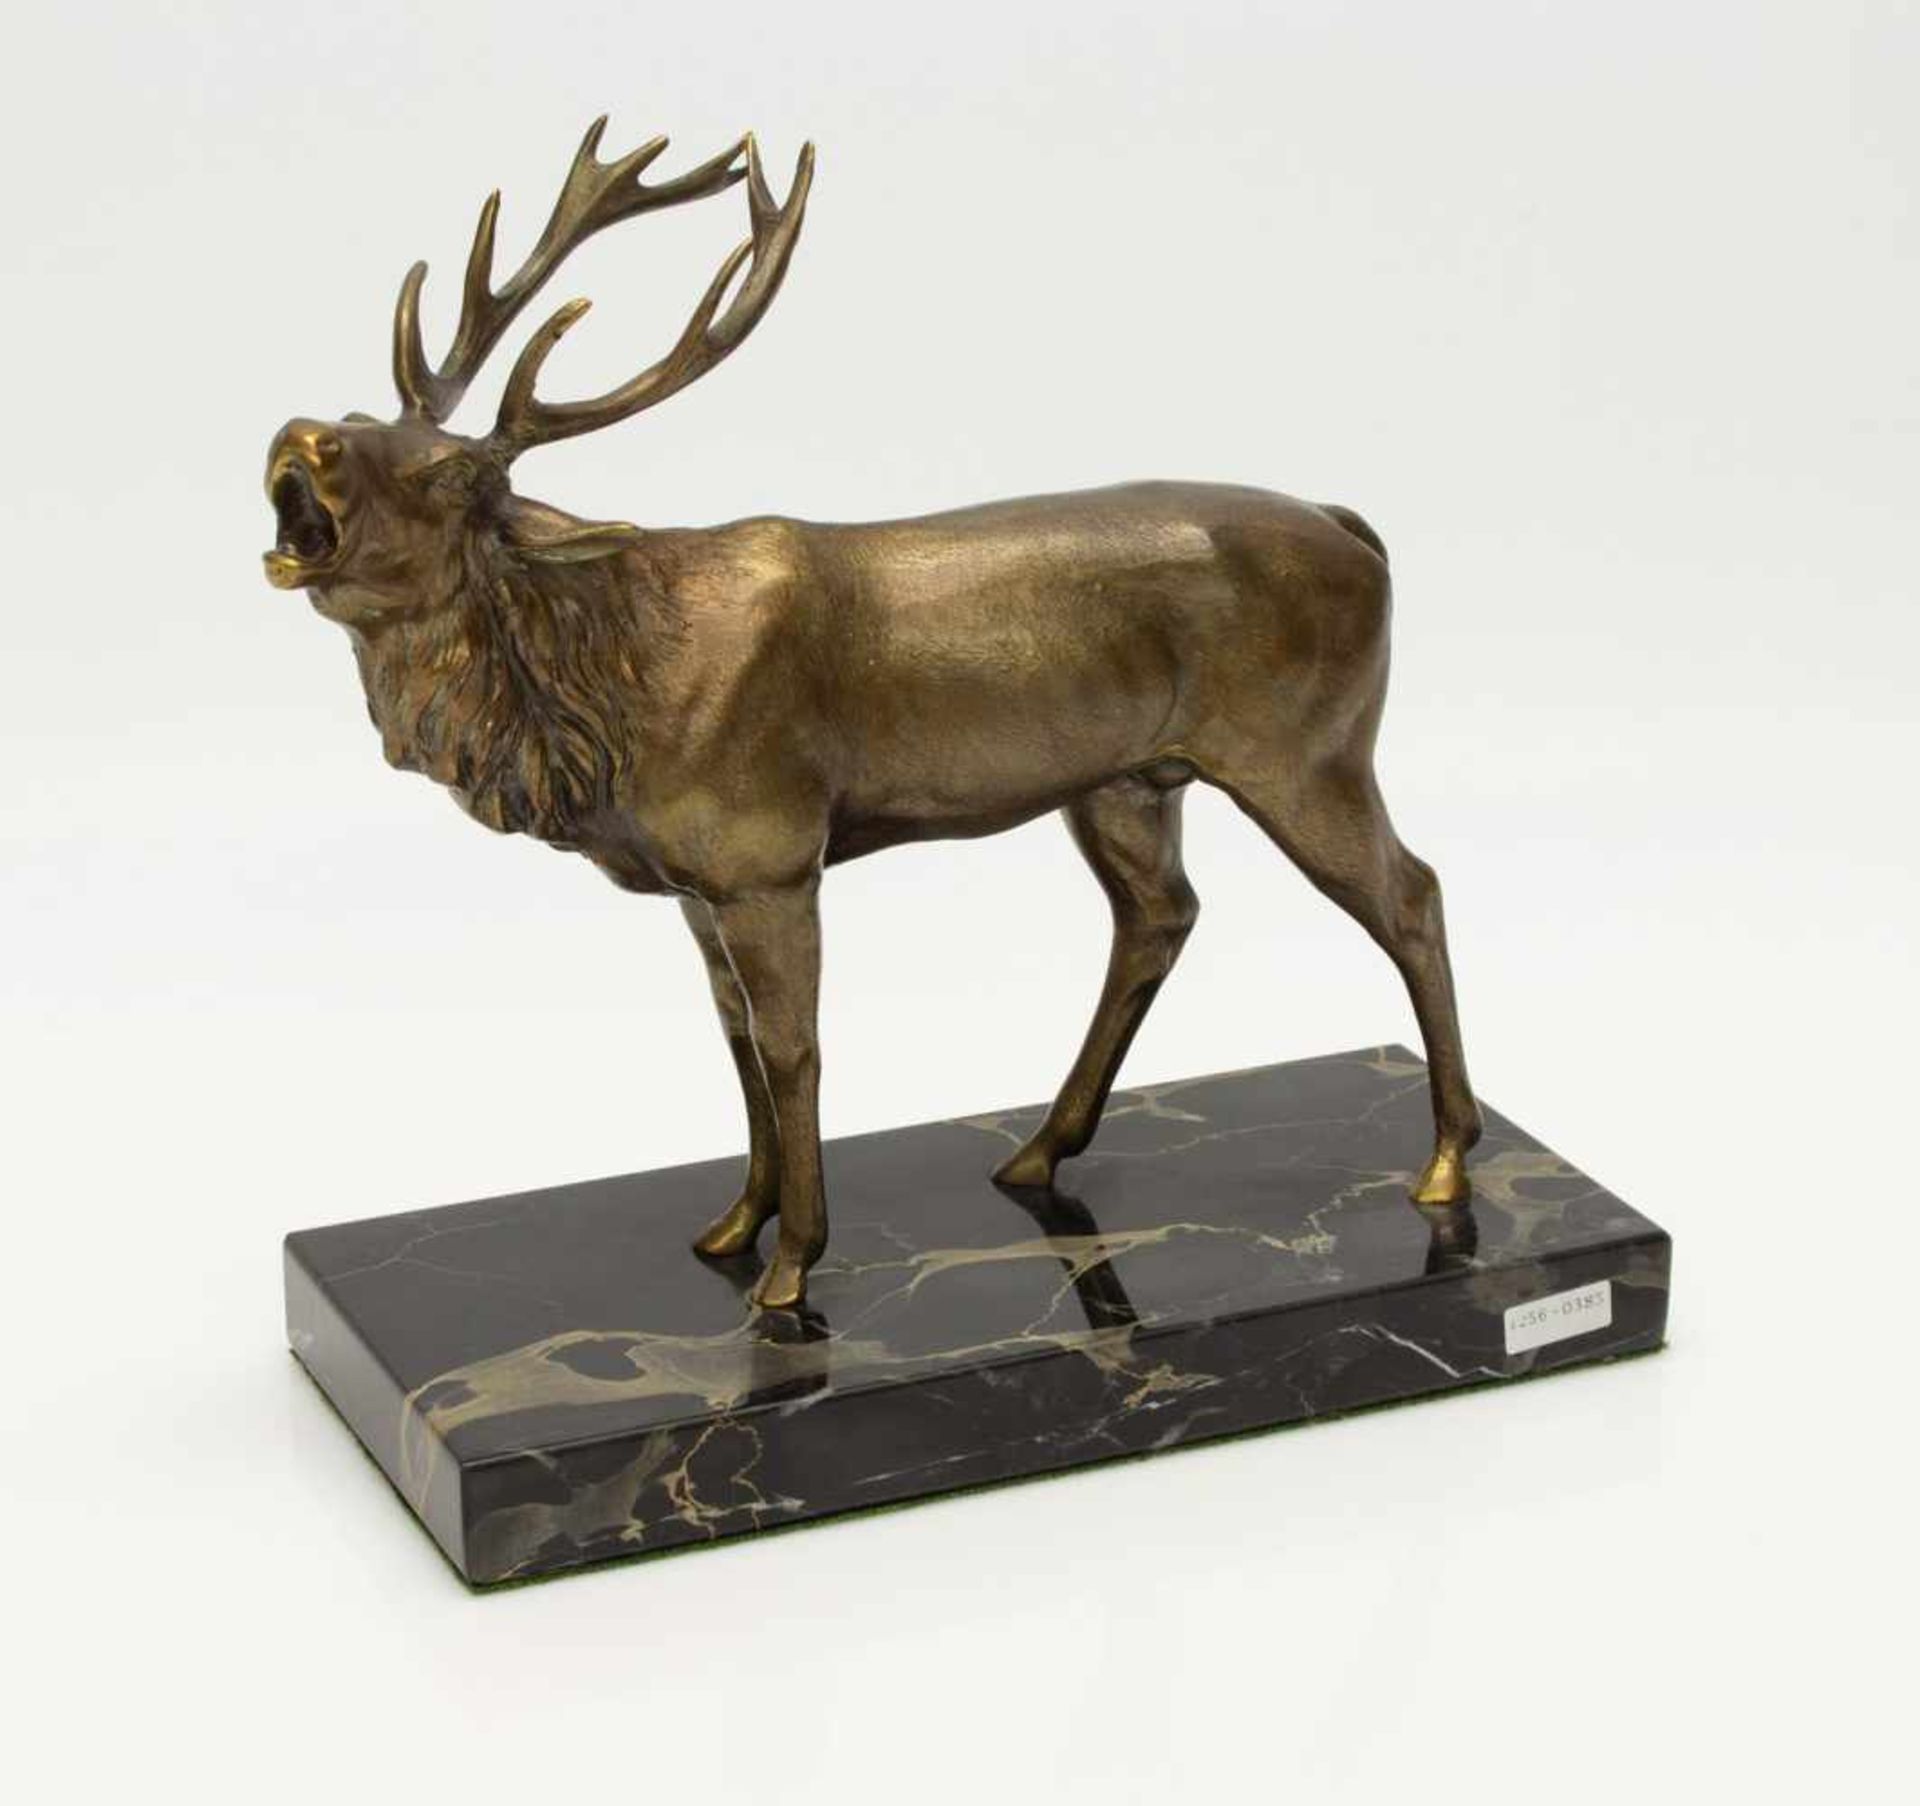 BronzehirschRöhrender Hirsch auf Marmorplatte, Weißbronze brünniert, H. 19 cm